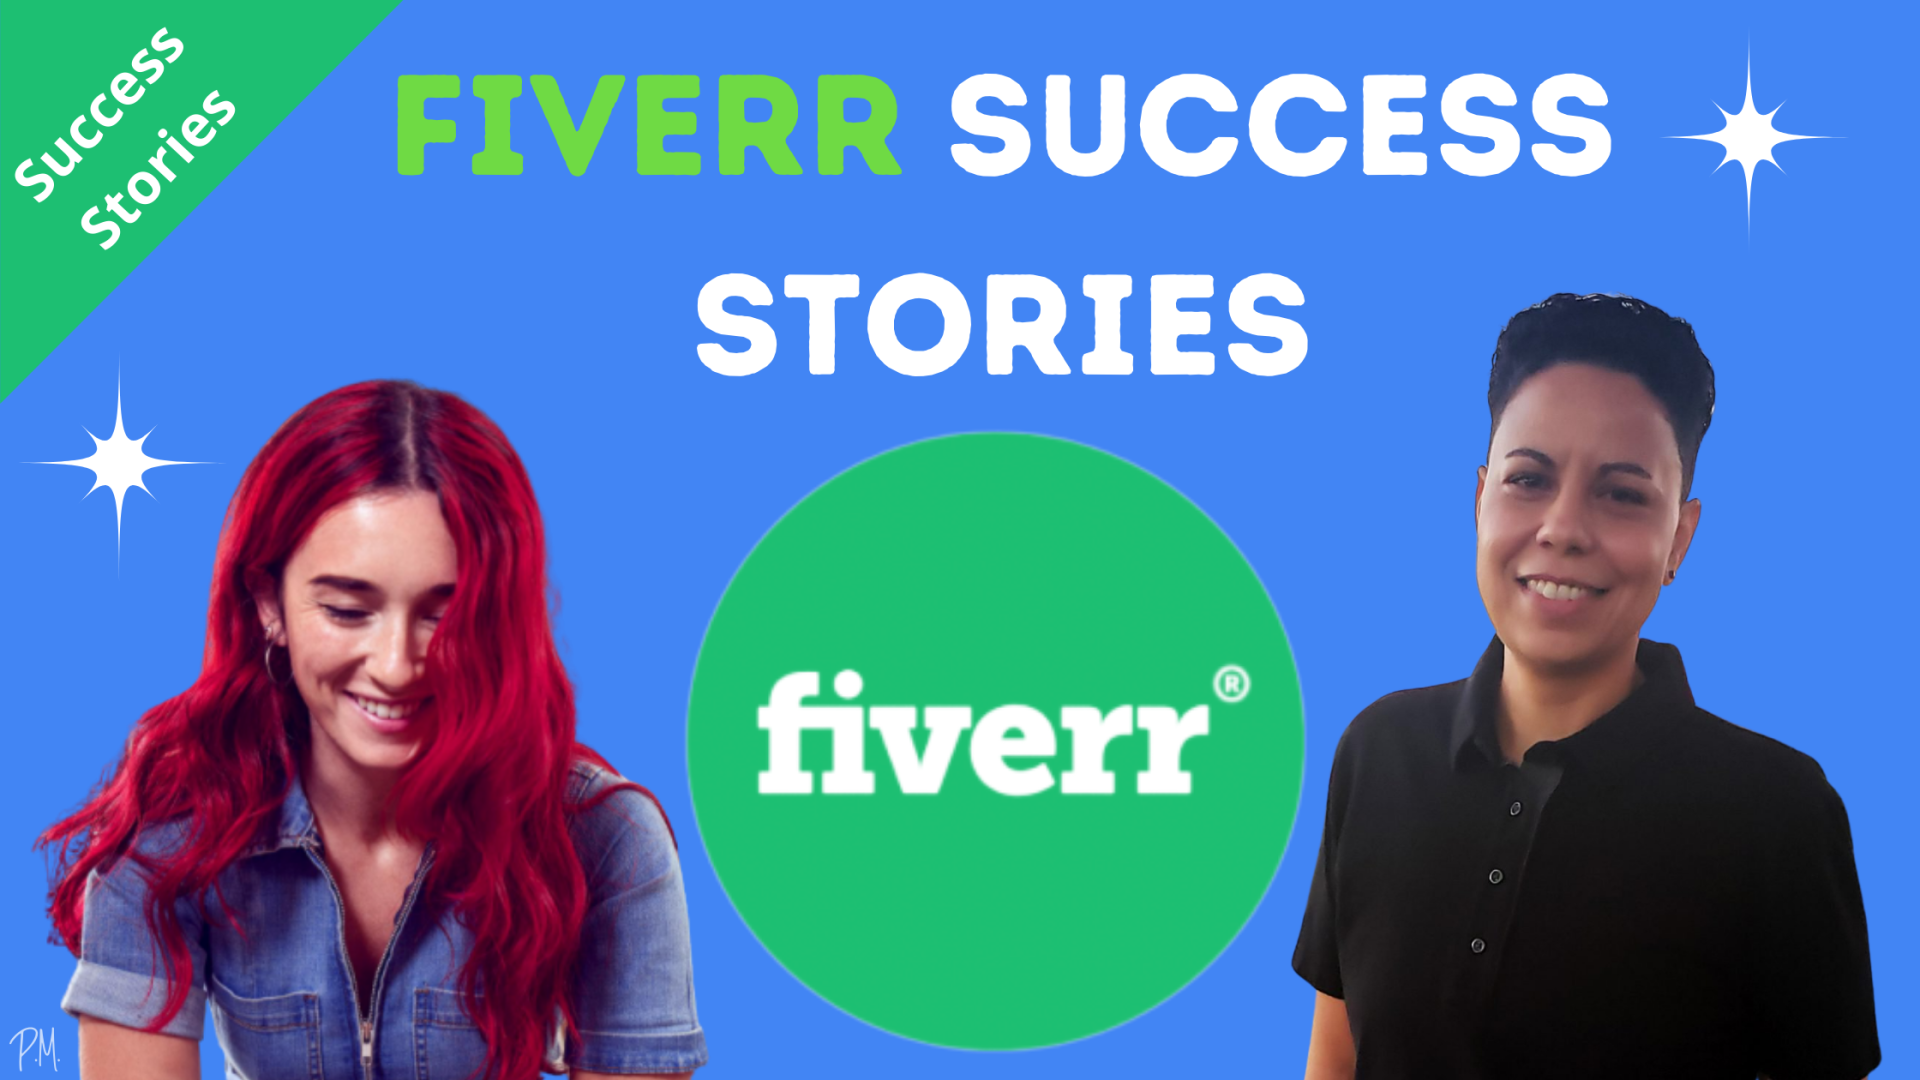 Fiverr success stories